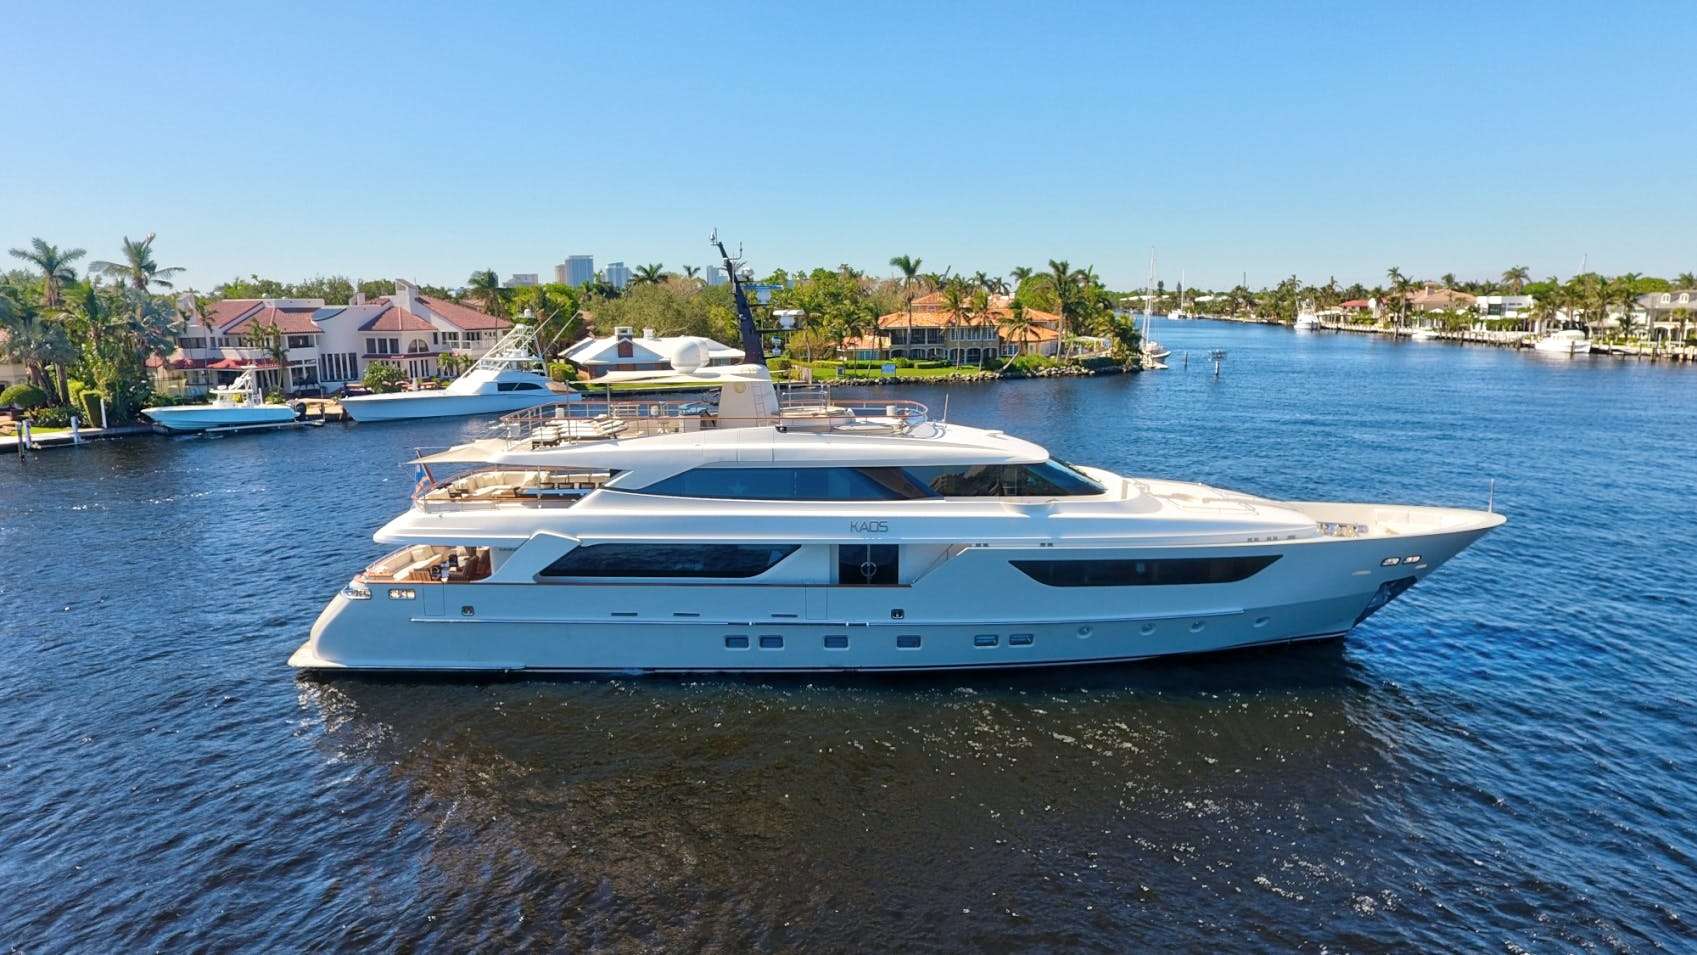 LOVEBUG - Motor Boat Charter USA & Boat hire in Florida & Bahamas 1